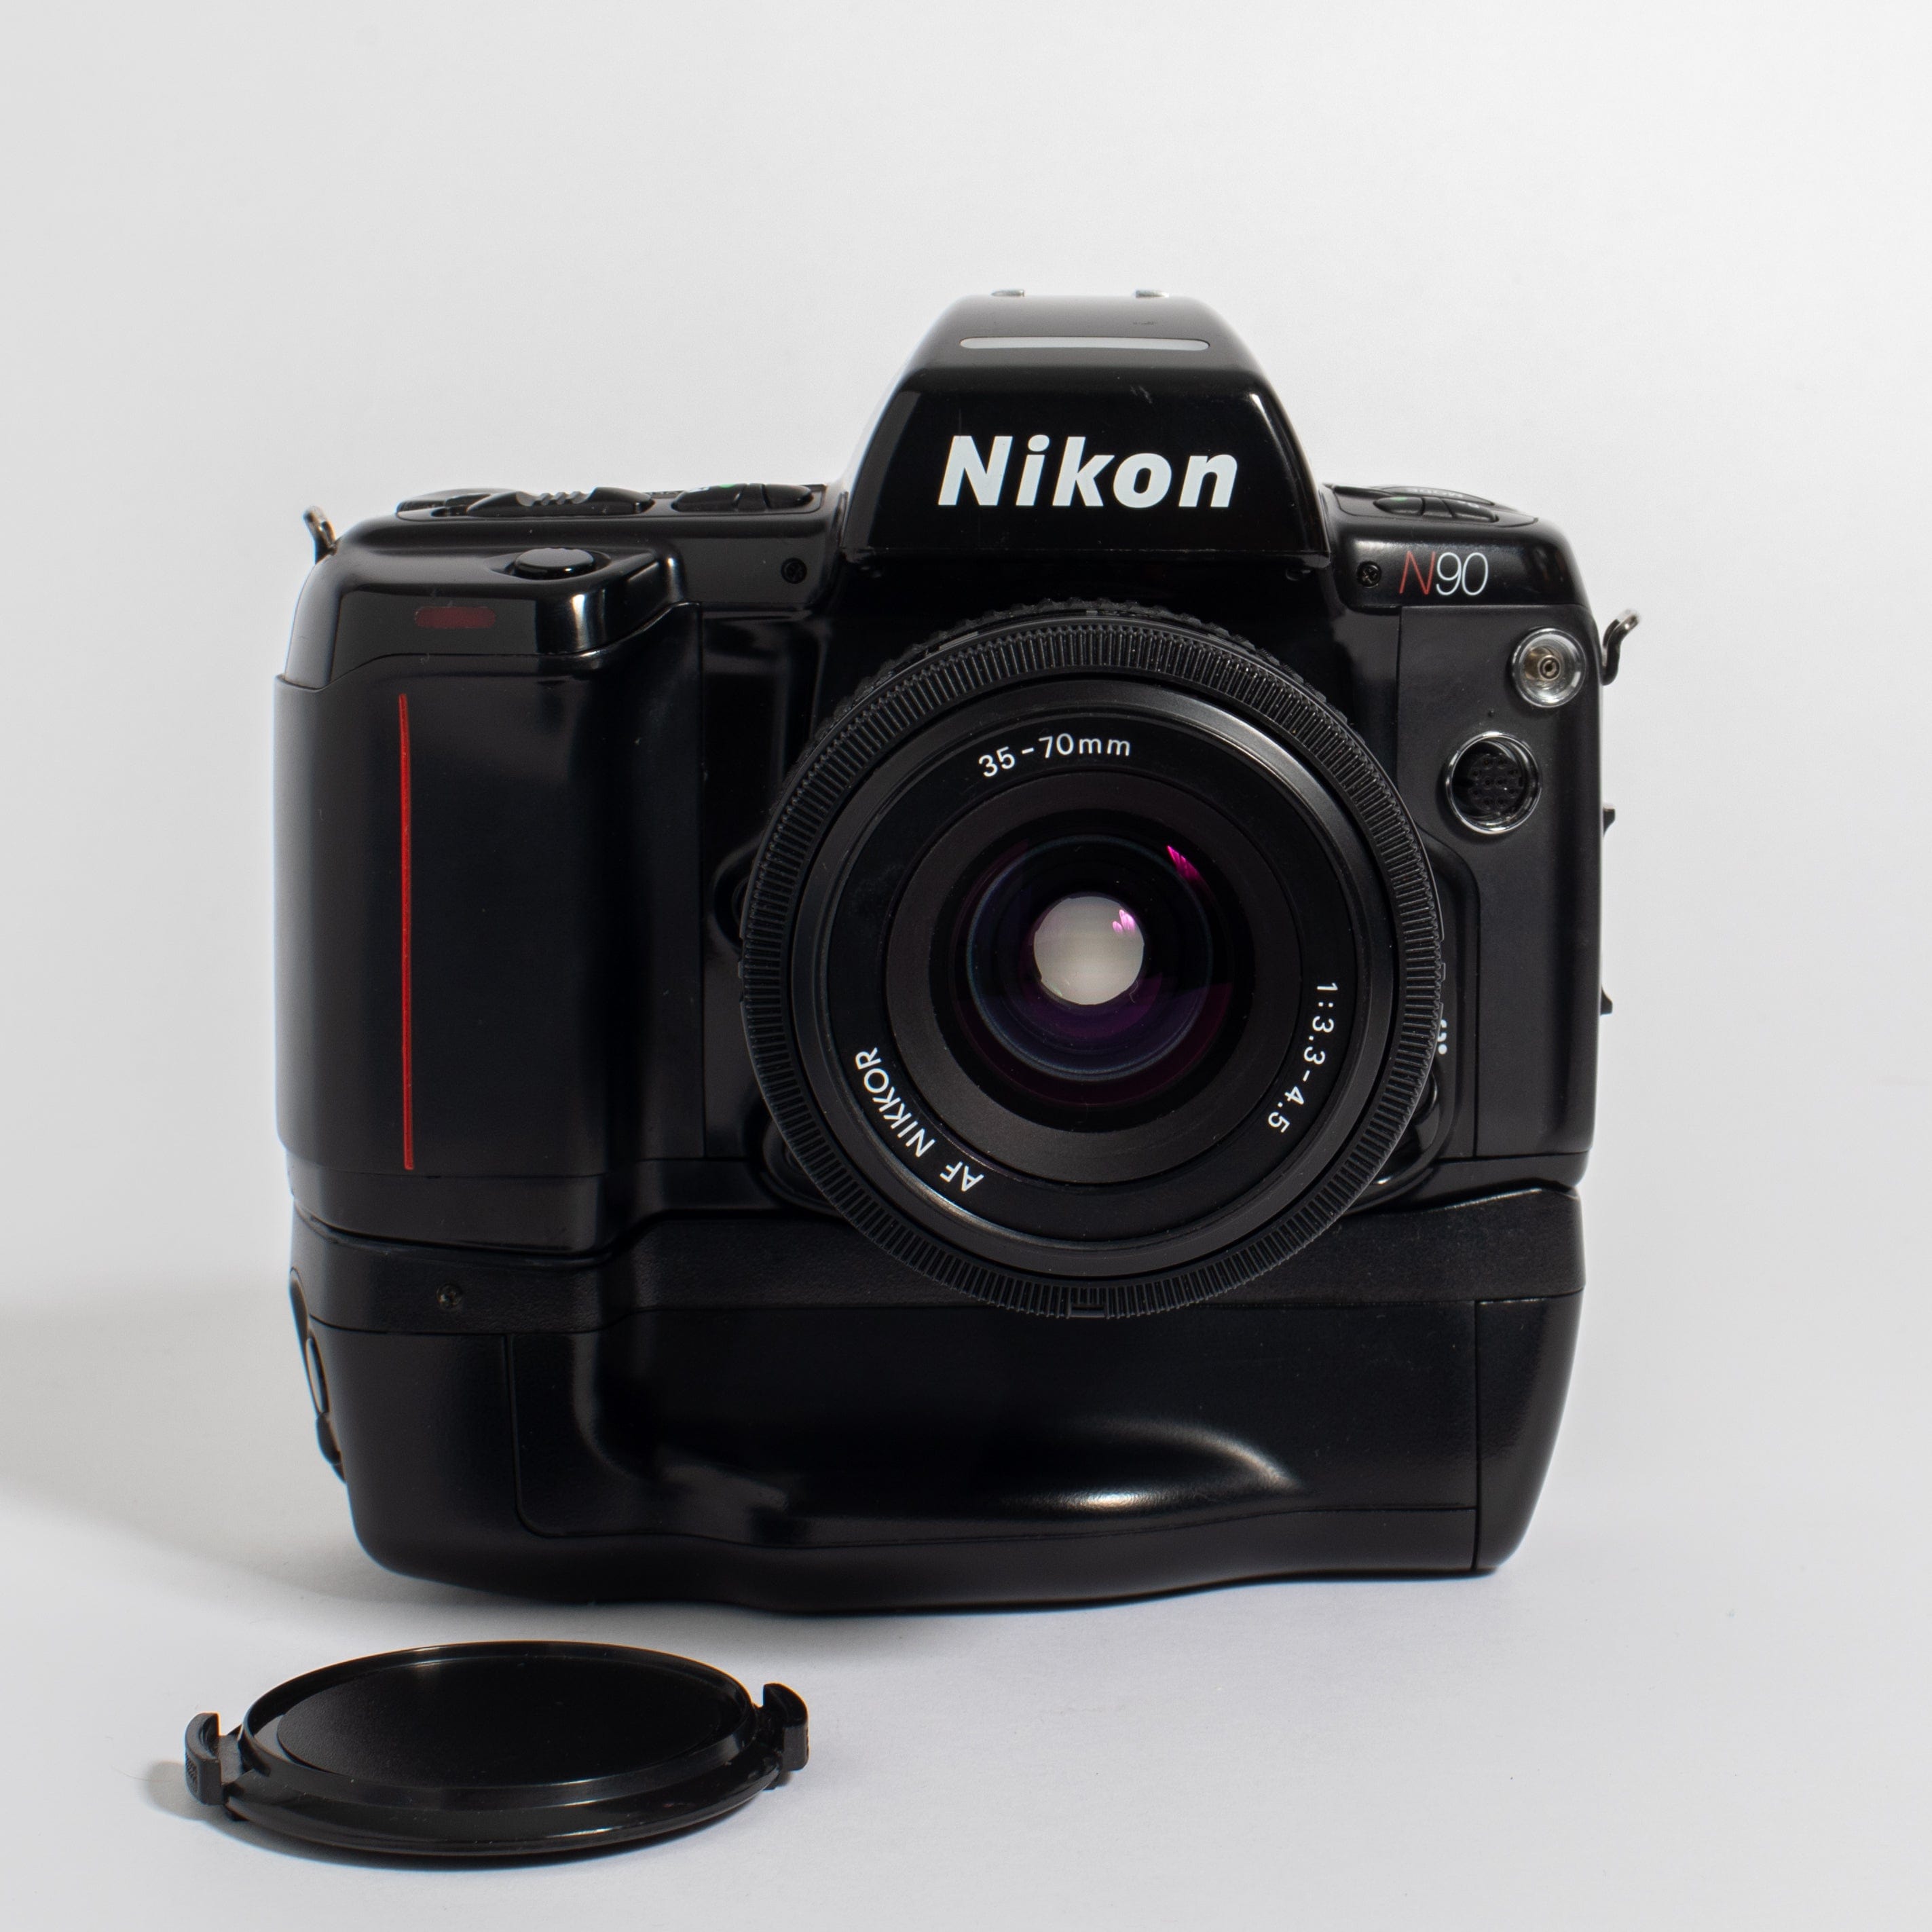 Nikon N90 with AF Nikkor 35-70mm f/3.3-4.5 and Motor Drive – Film 